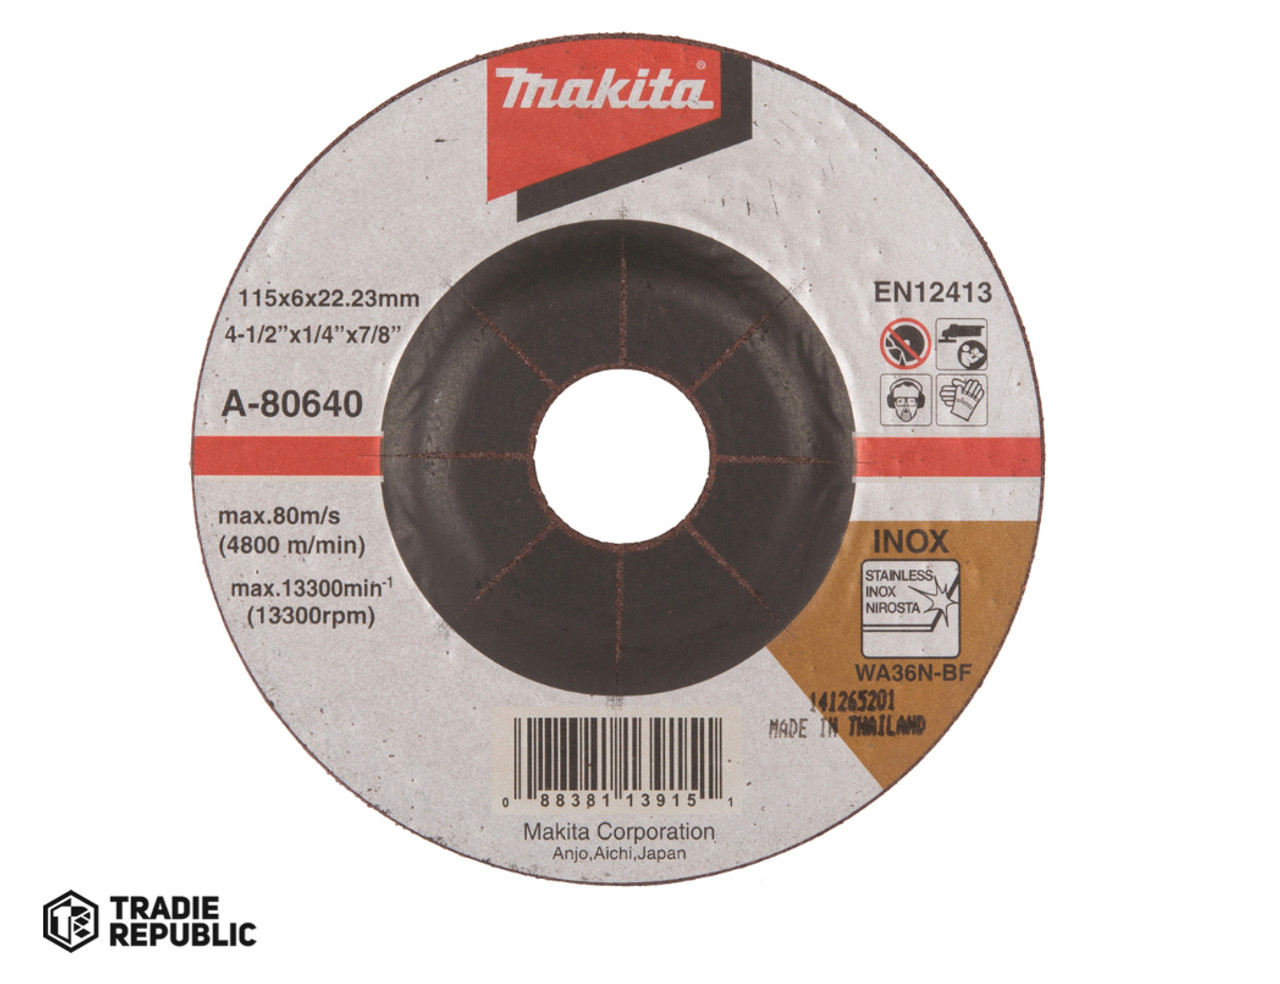 A-80640 Makita Grind Disc 115X6X22.23mm Inox